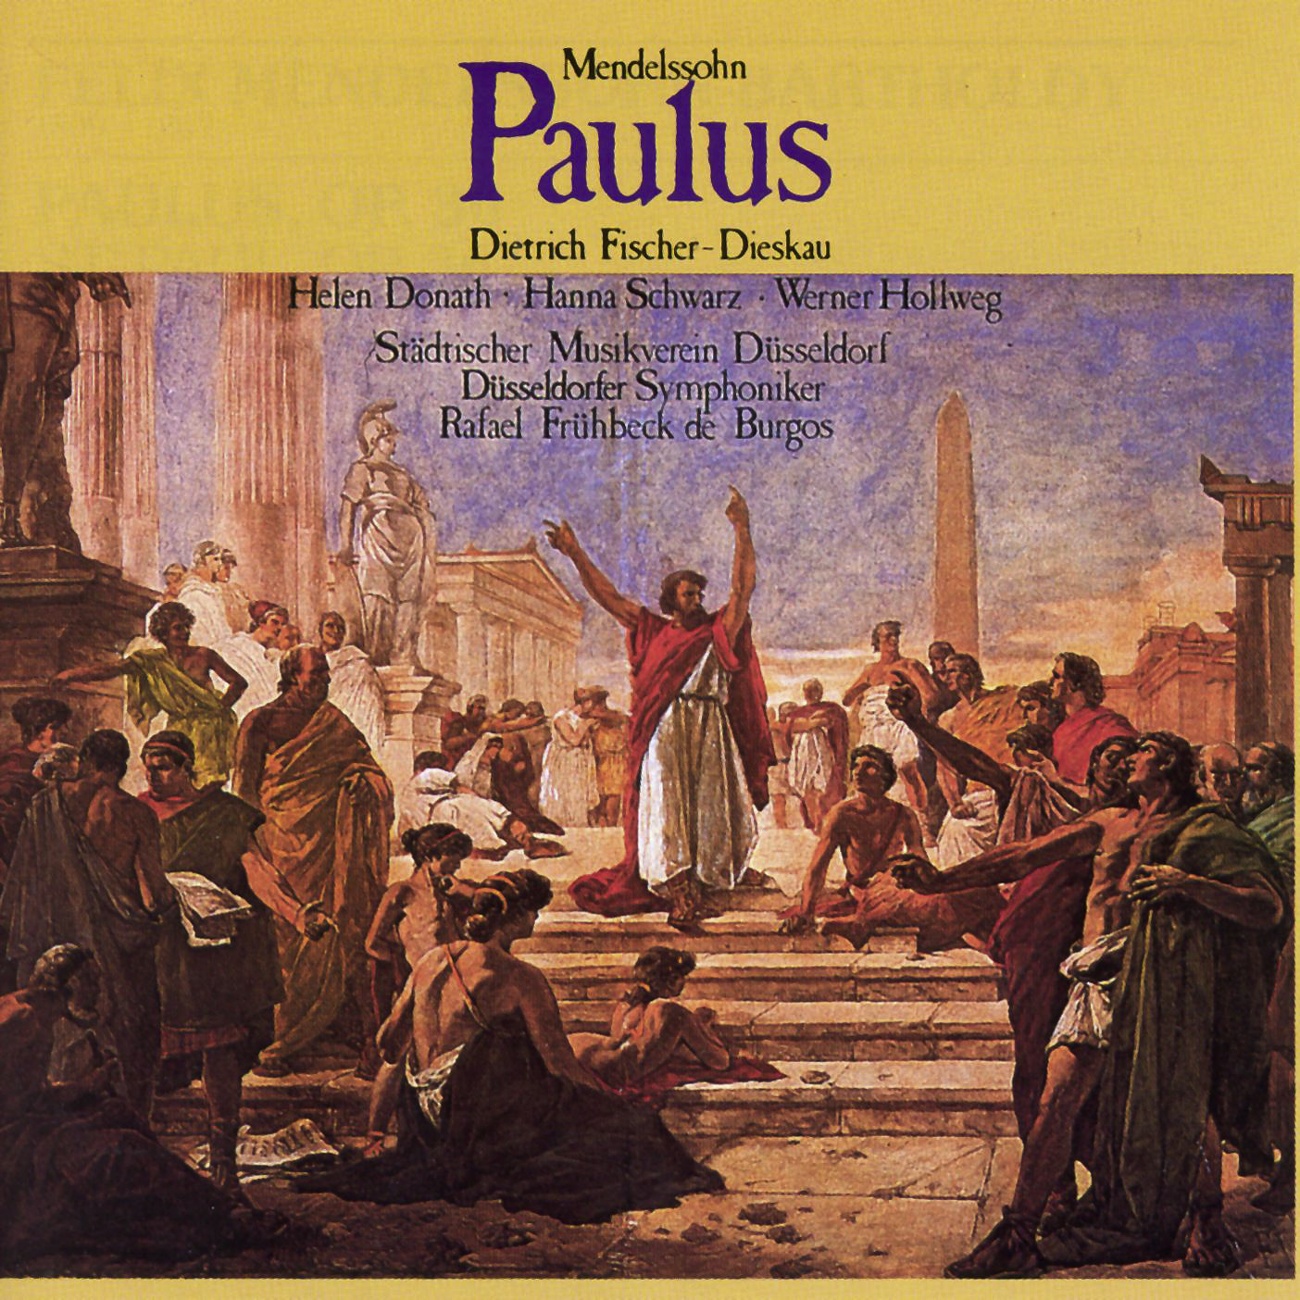 Paulus op. 36  Oratorium in 2 Teilen 1987 Digital Remaster, Zweiter Teil: Nr. 45  Nicht aber ihm allein, sondern allen Schlu chor